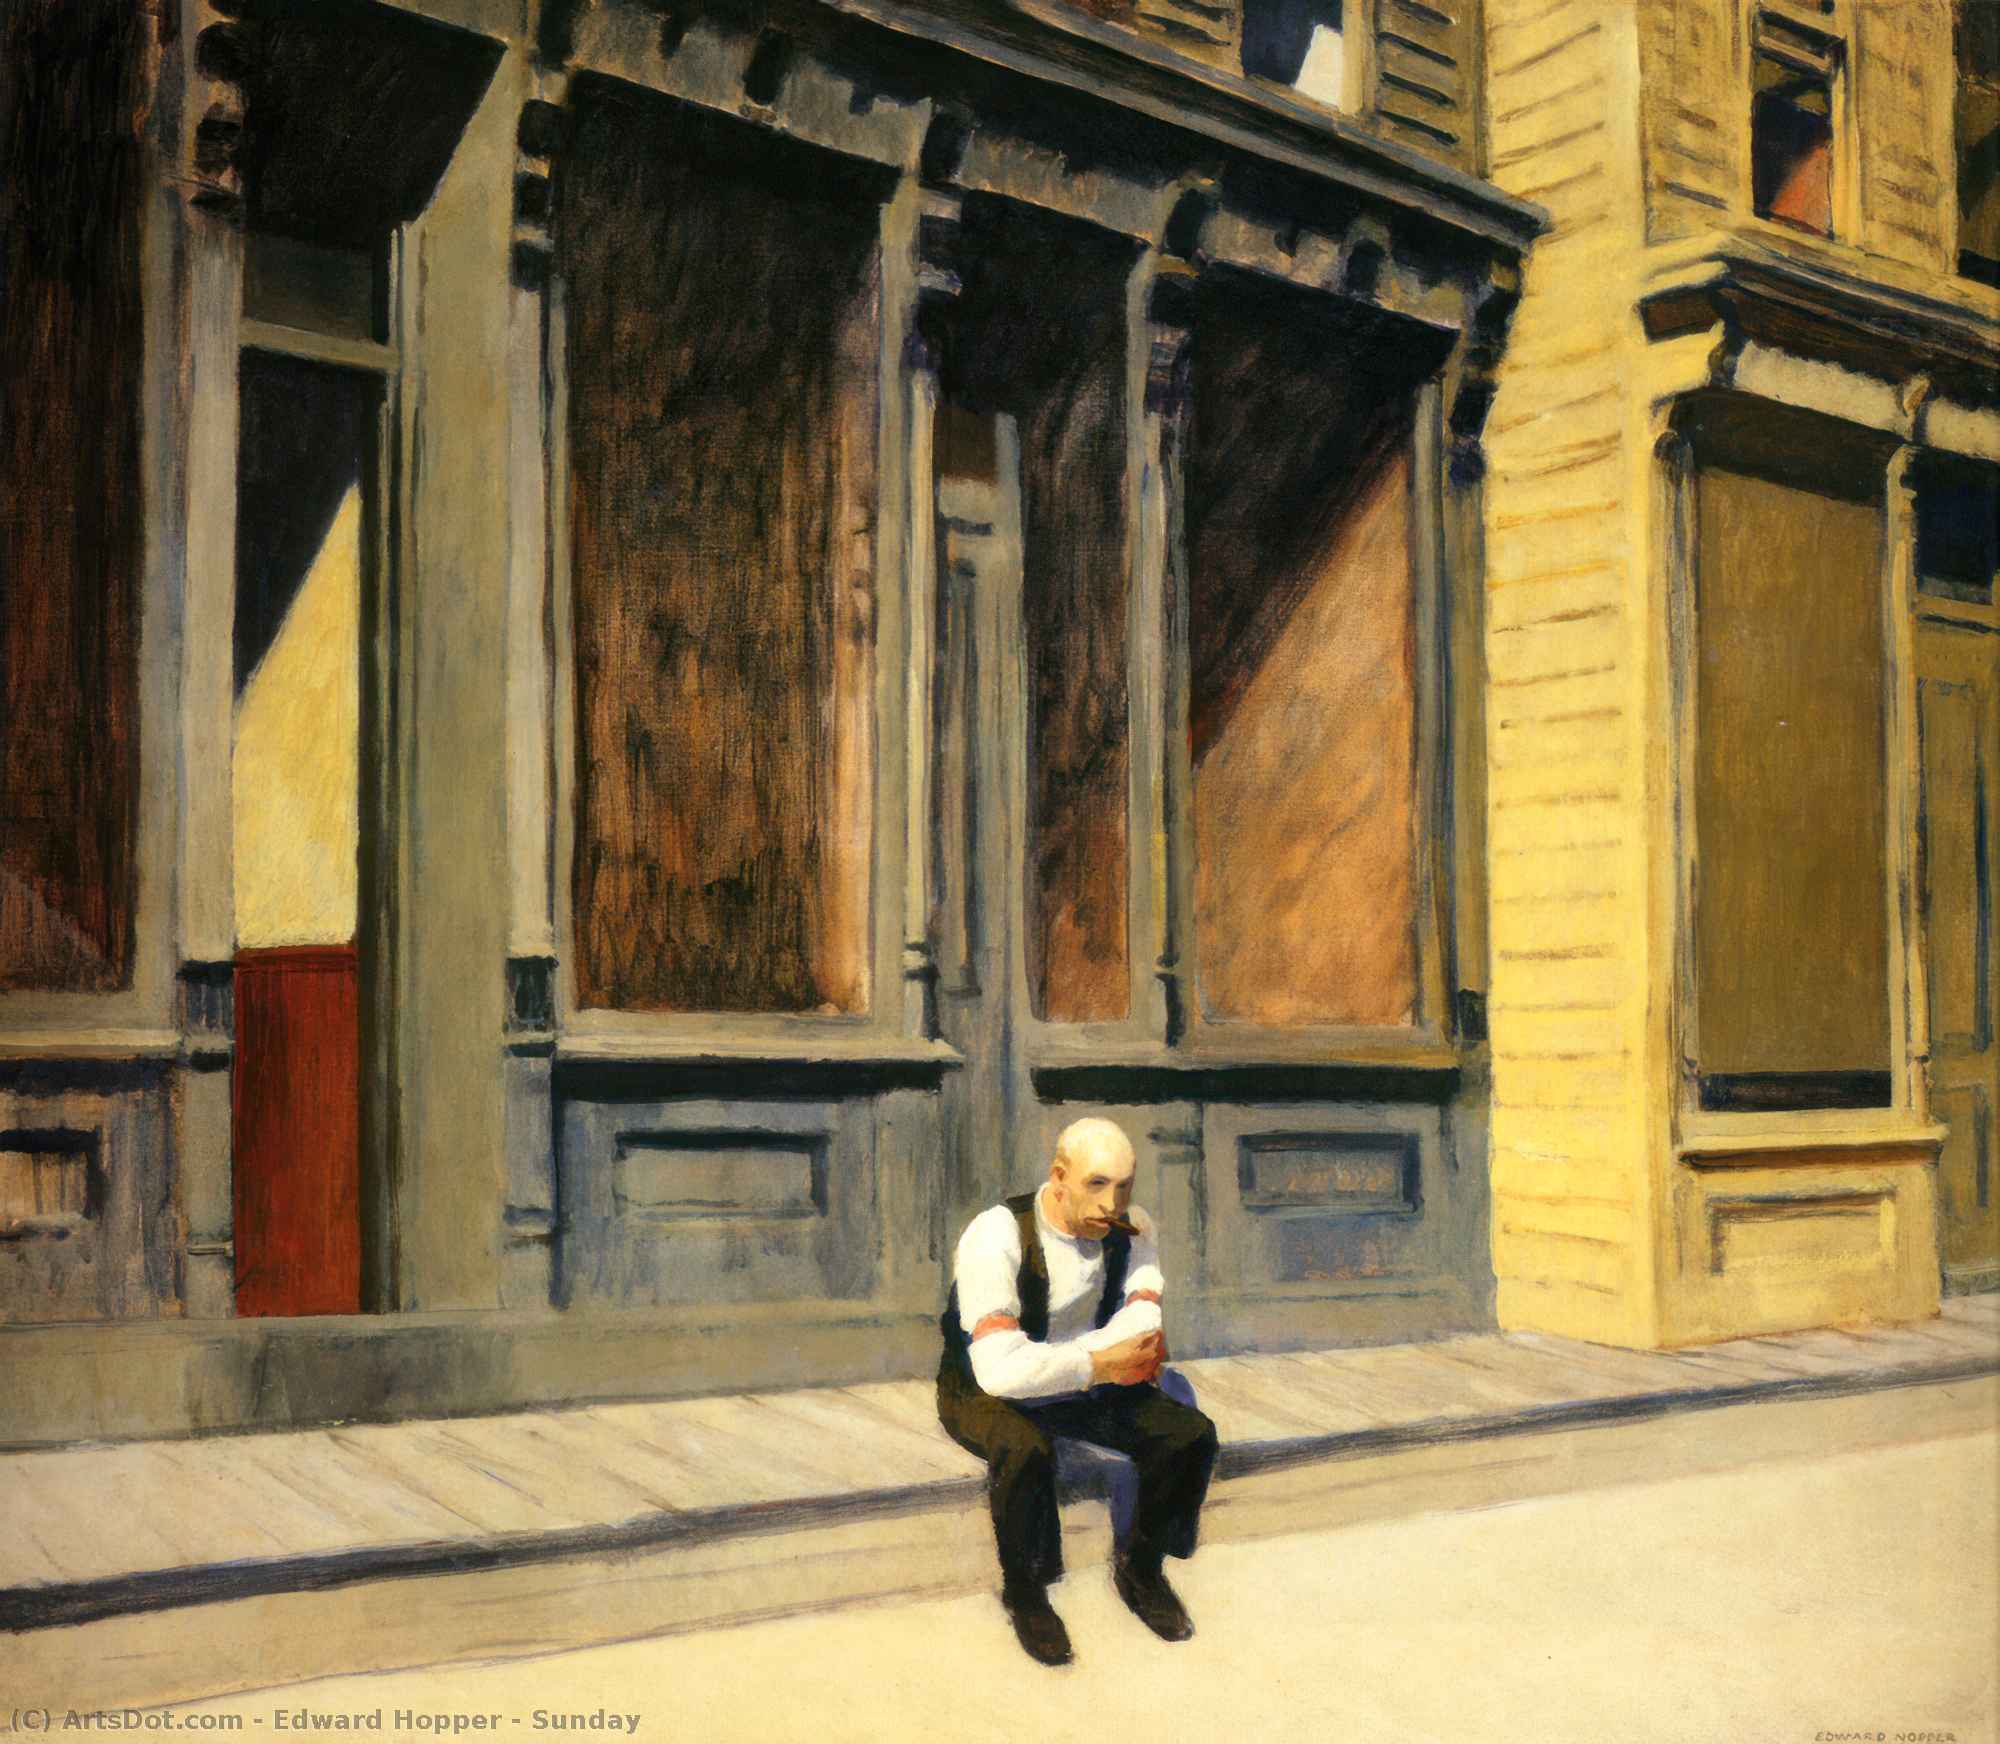 Compre Museu De Reproduções De Arte Domingo, 1926 por Edward Hopper (Inspirado por) (1931-1967, United States) | ArtsDot.com